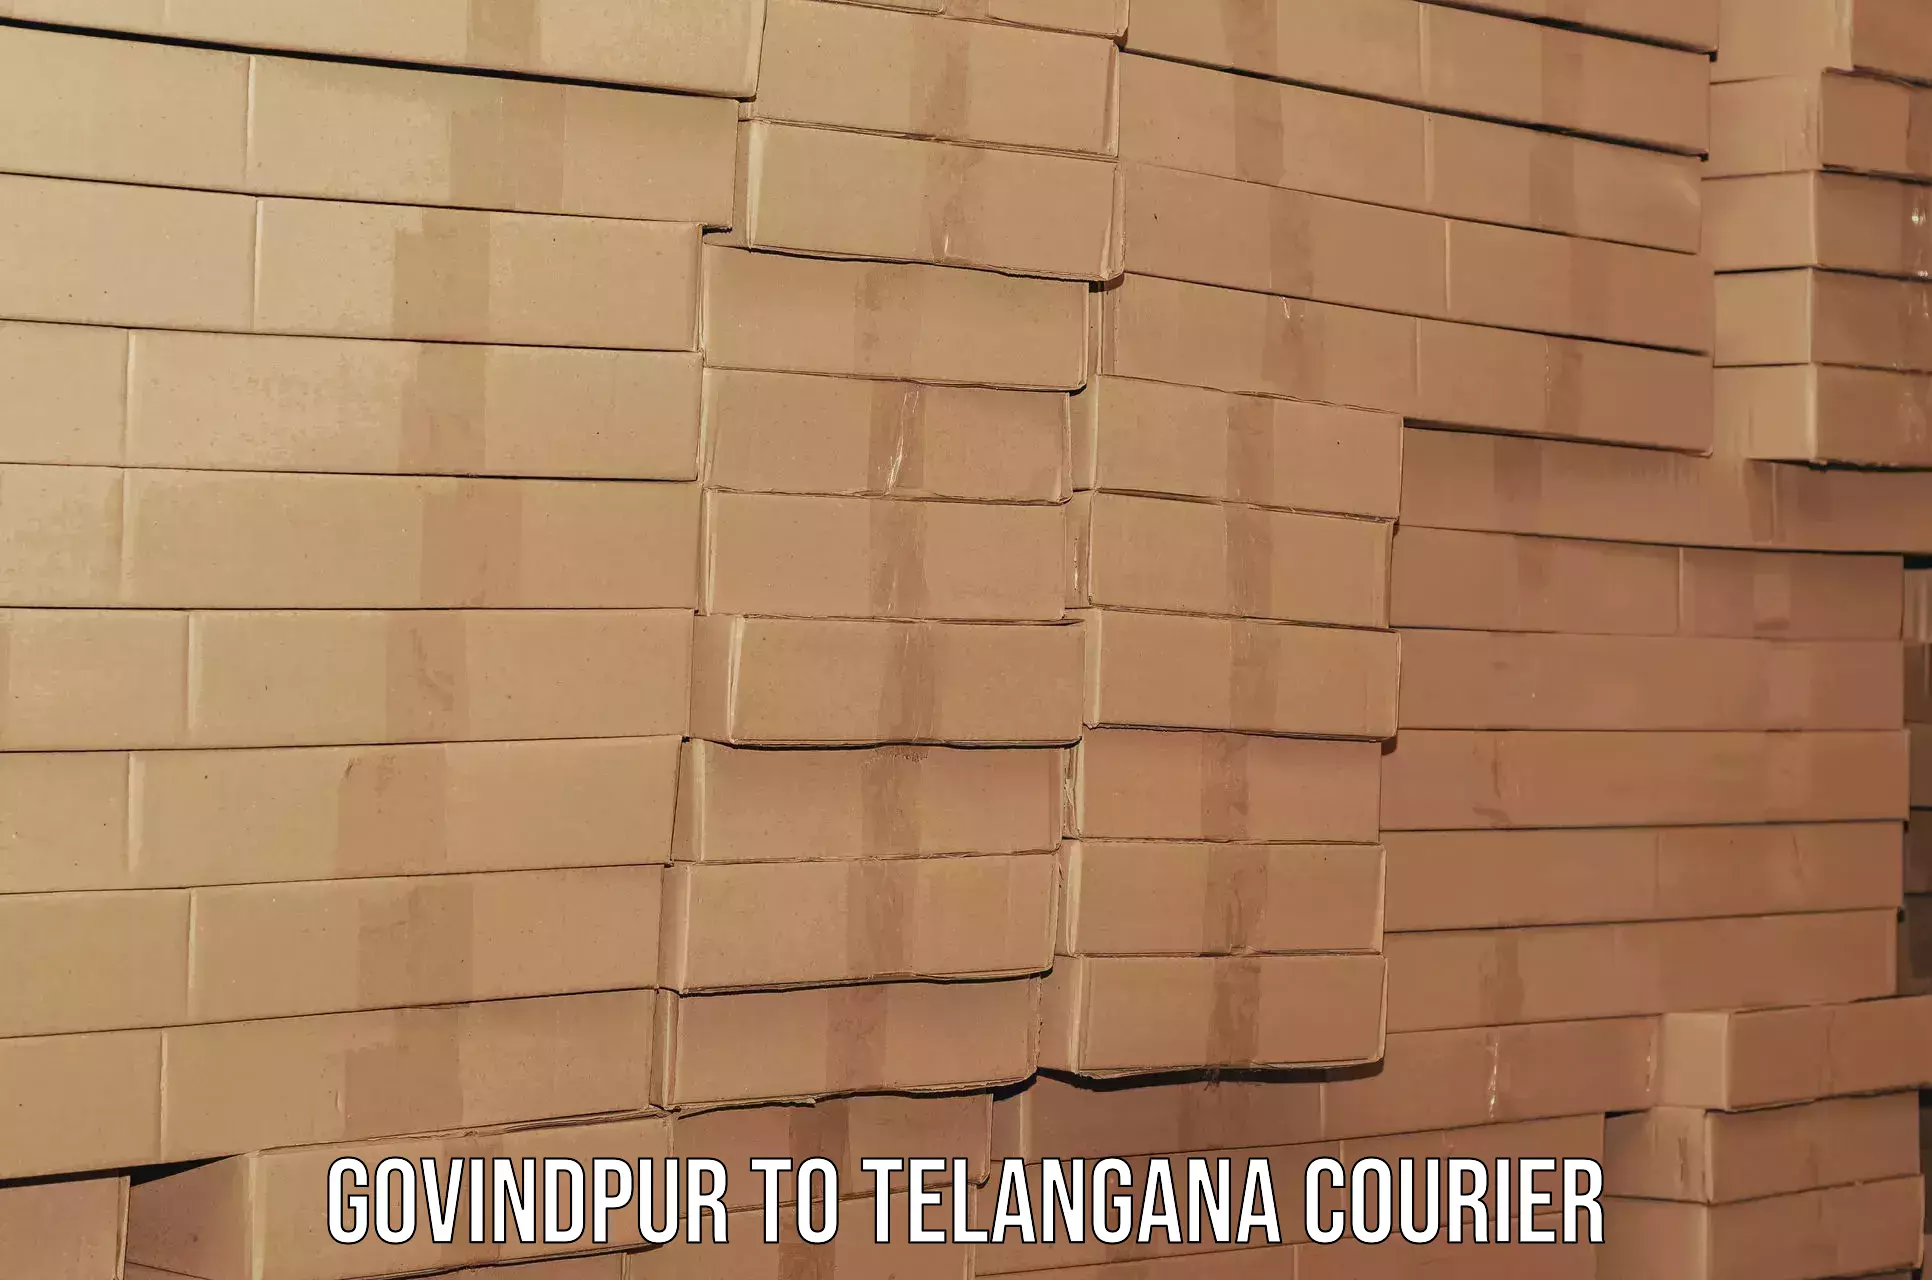 Reliable relocation services Govindpur to Tallada